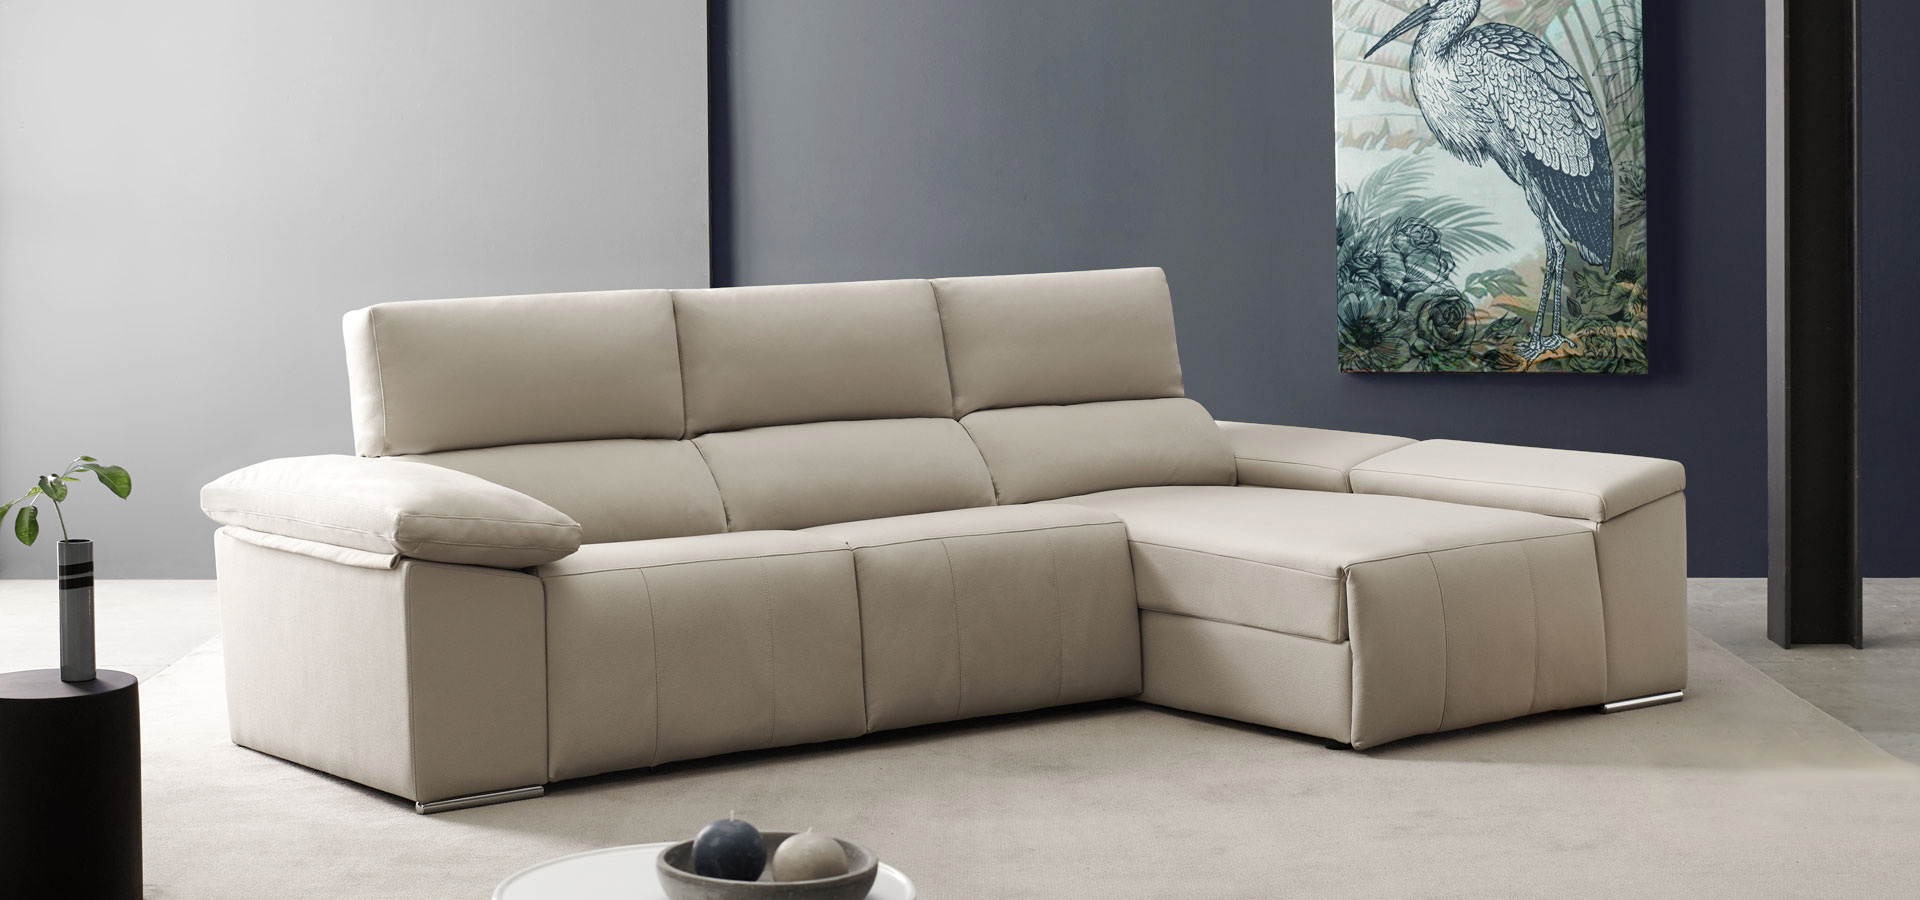 ms-merkasofa-sofas-precios-fabrica